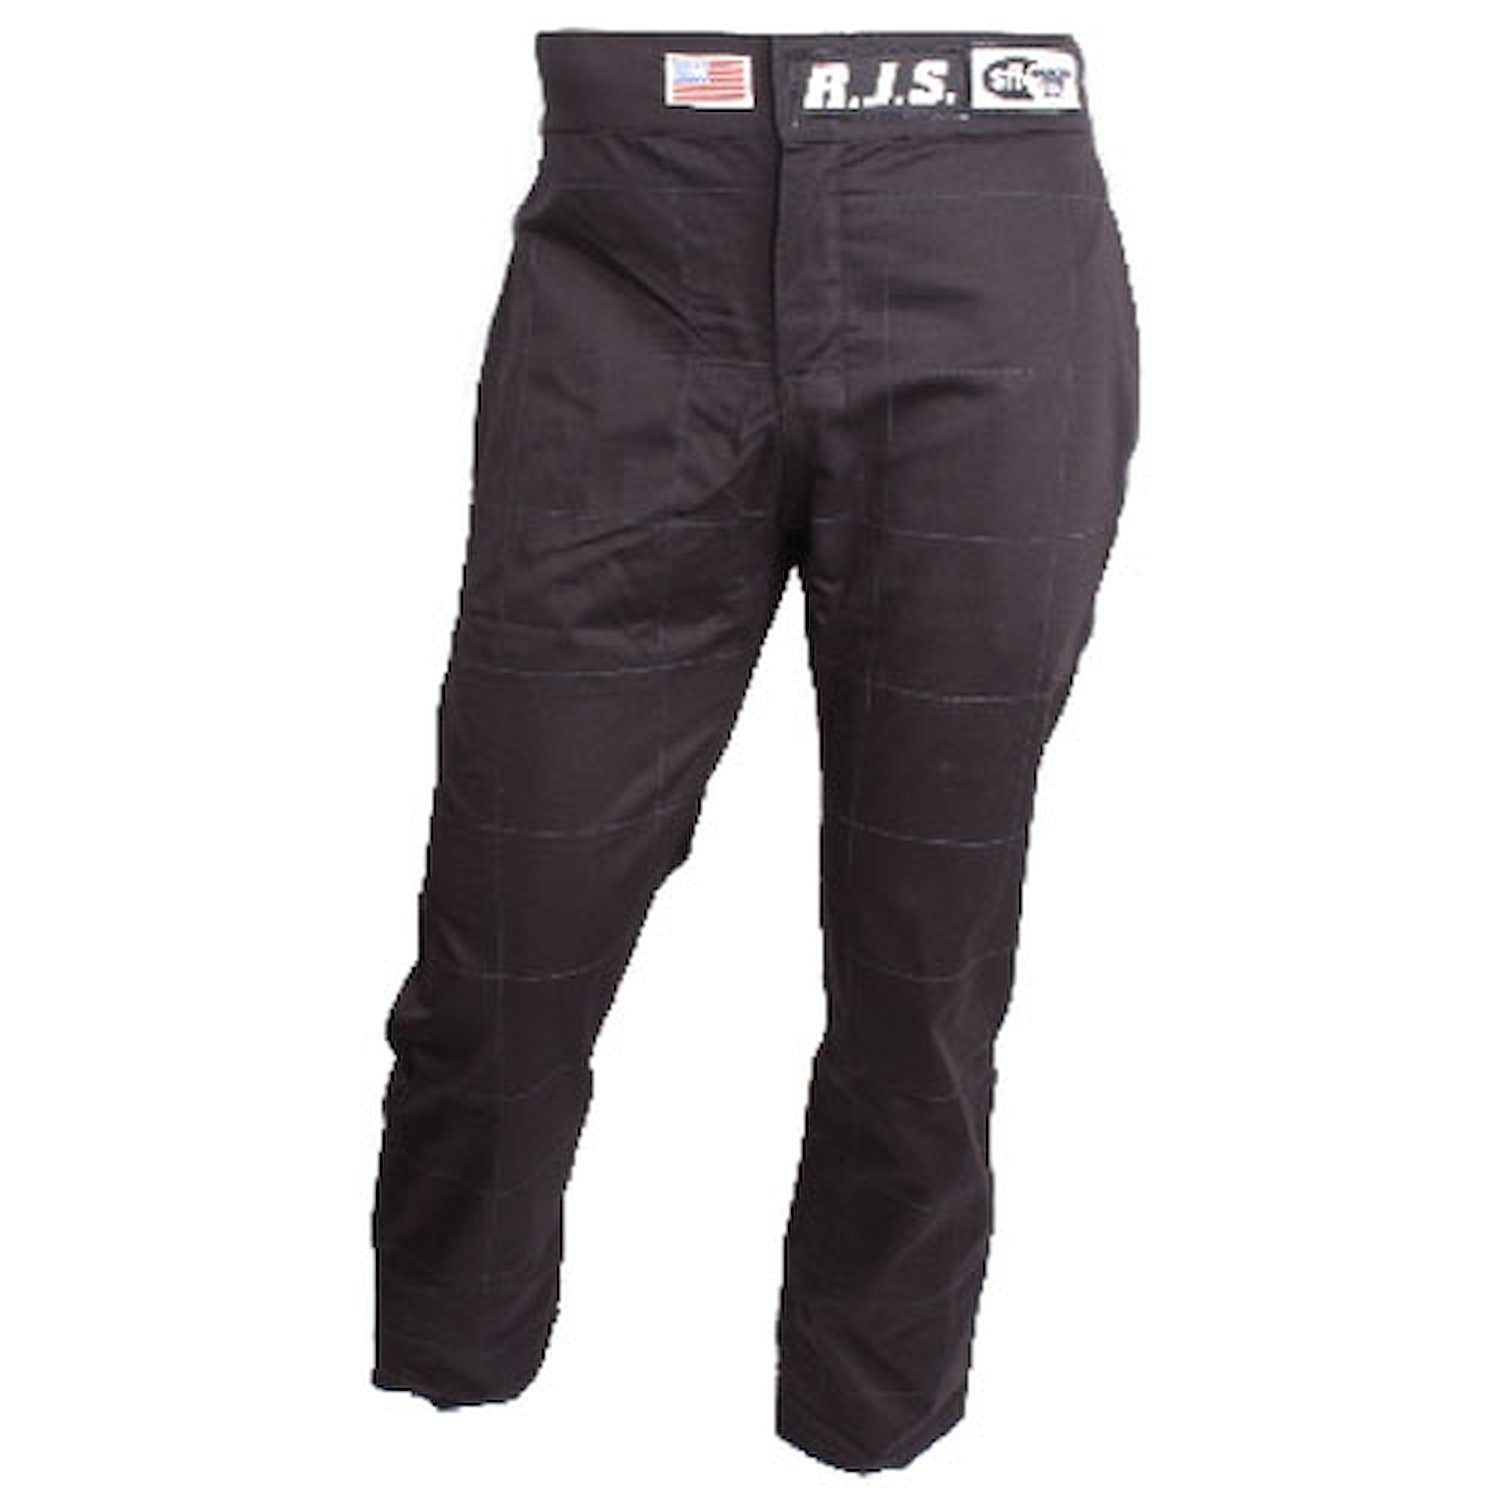 Elite Series 1 Pants SFI 3.2 A/1